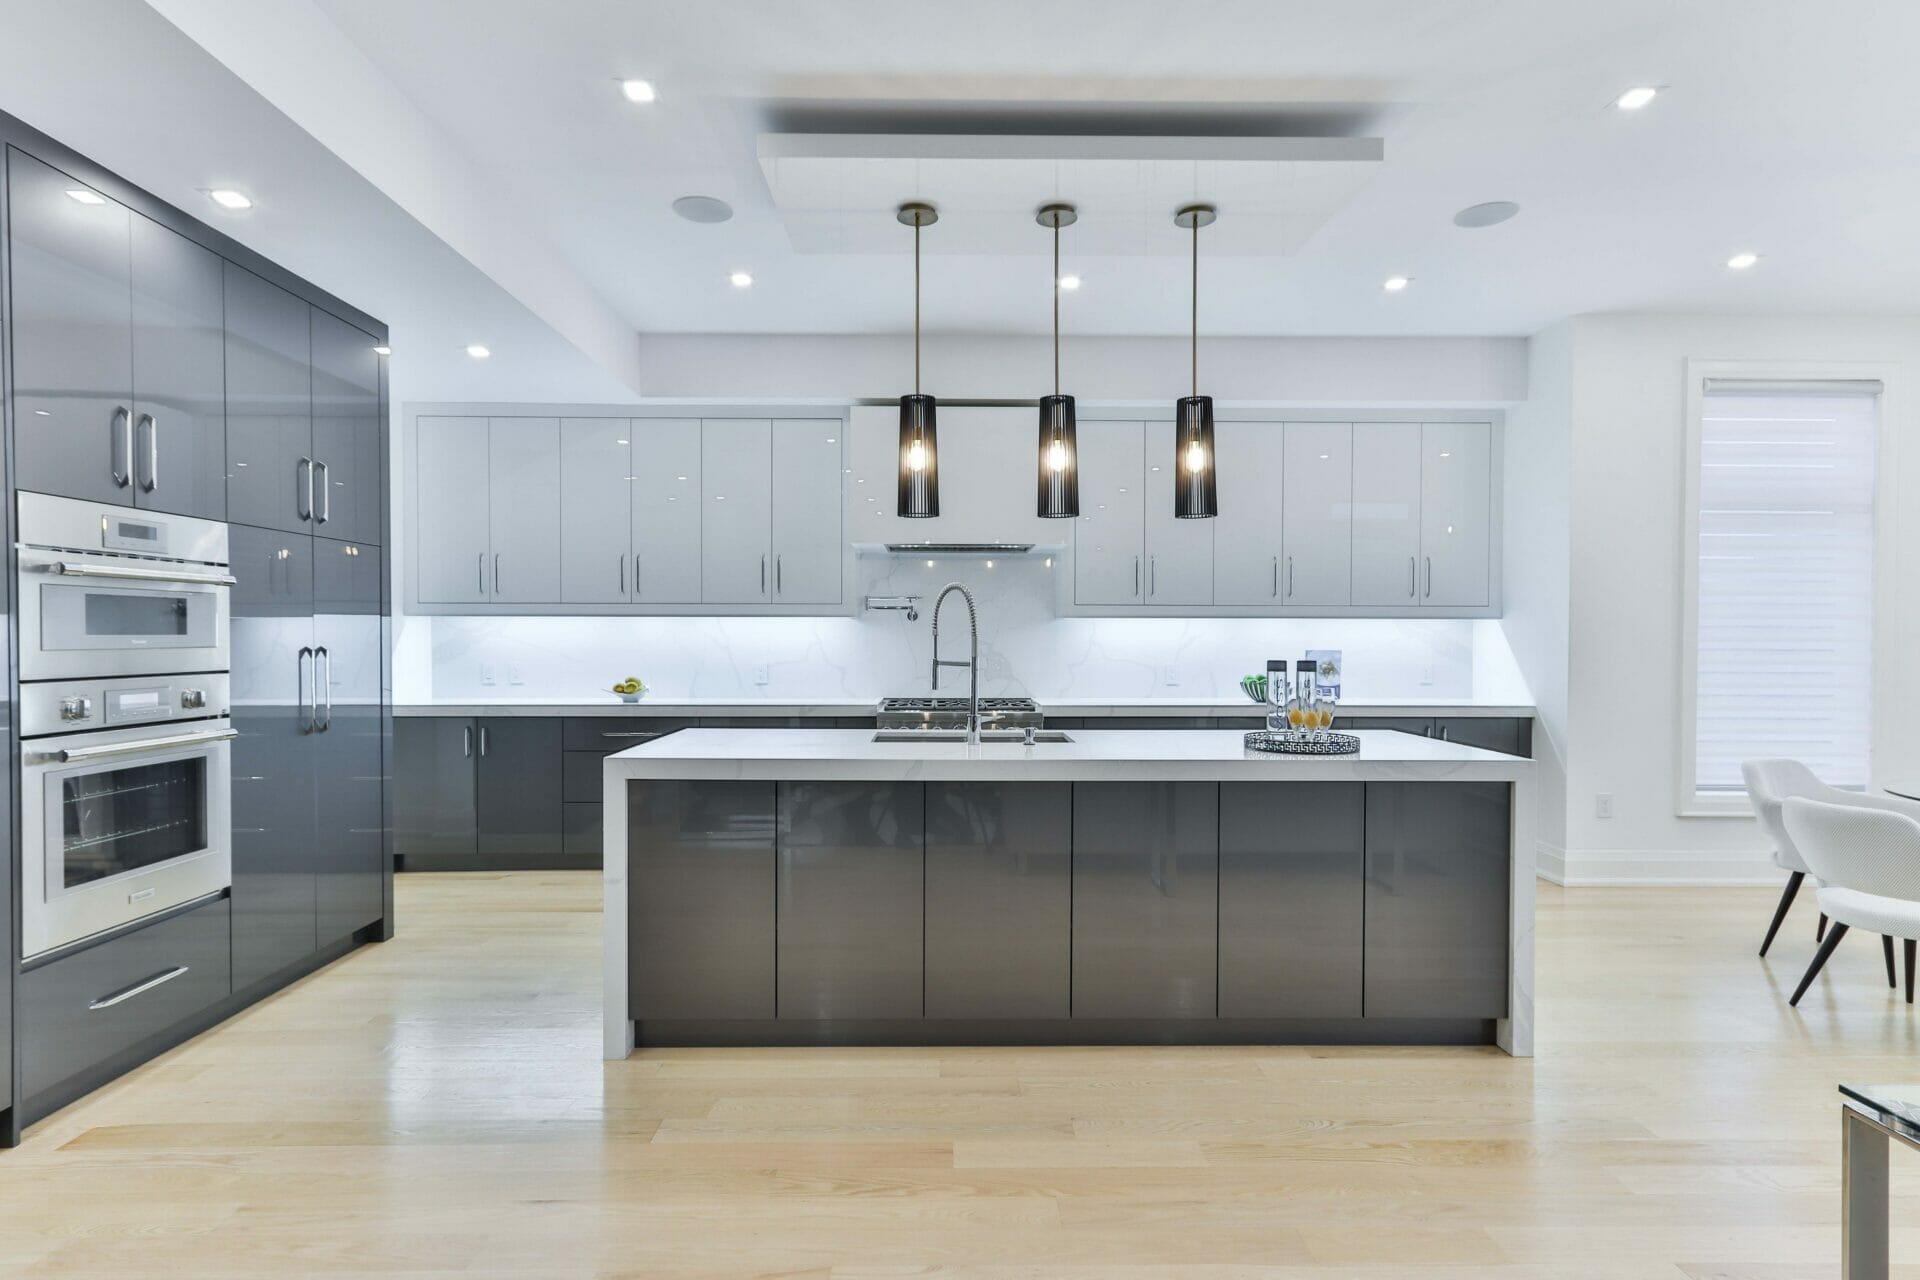 Interior design of a beige kitchen in a modern style 2023 